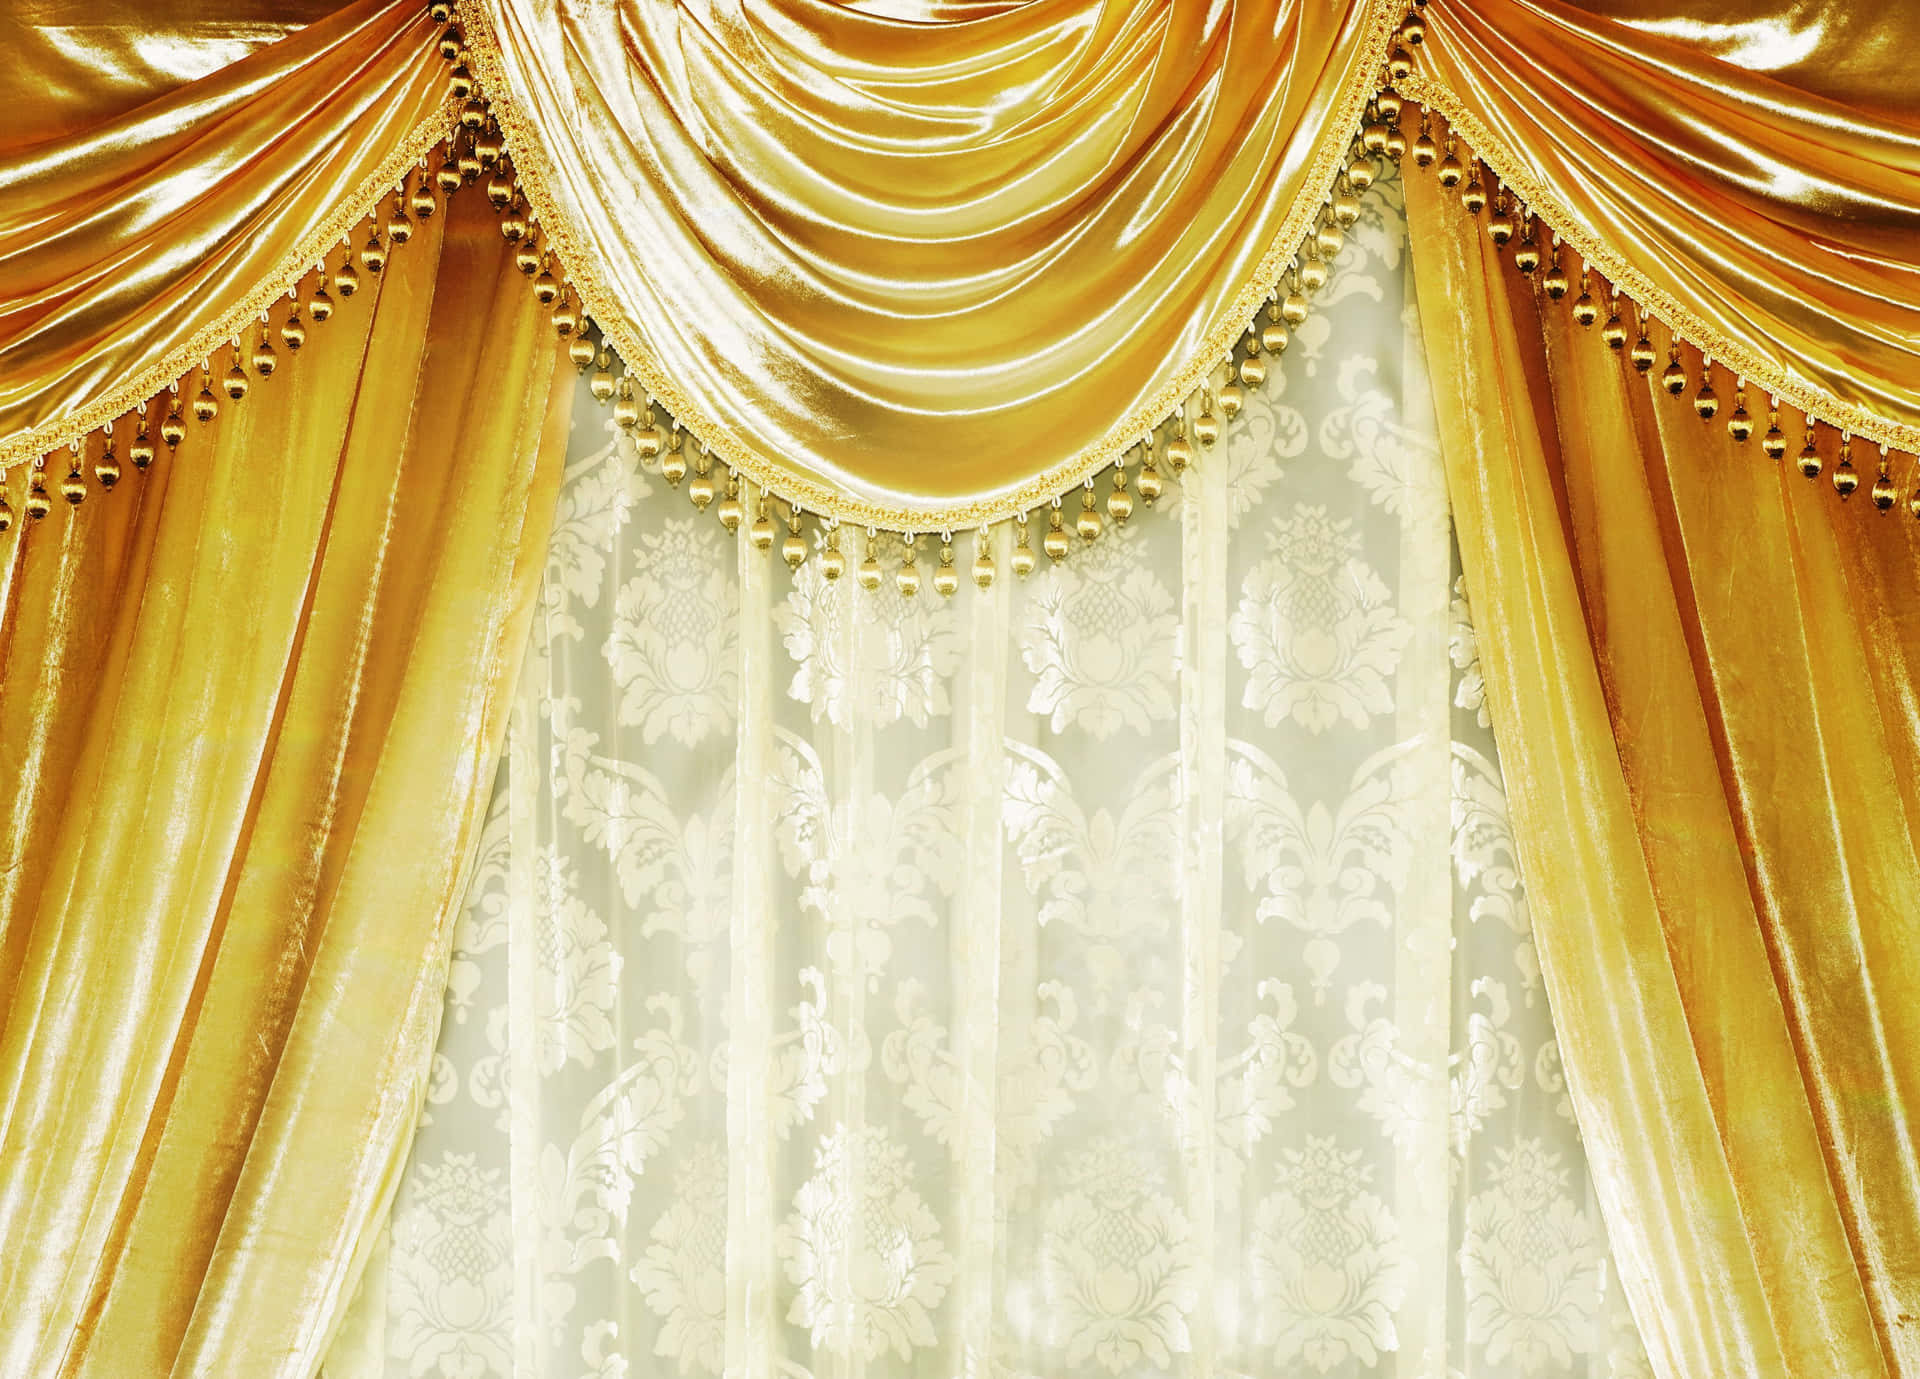 A Gold Curtain